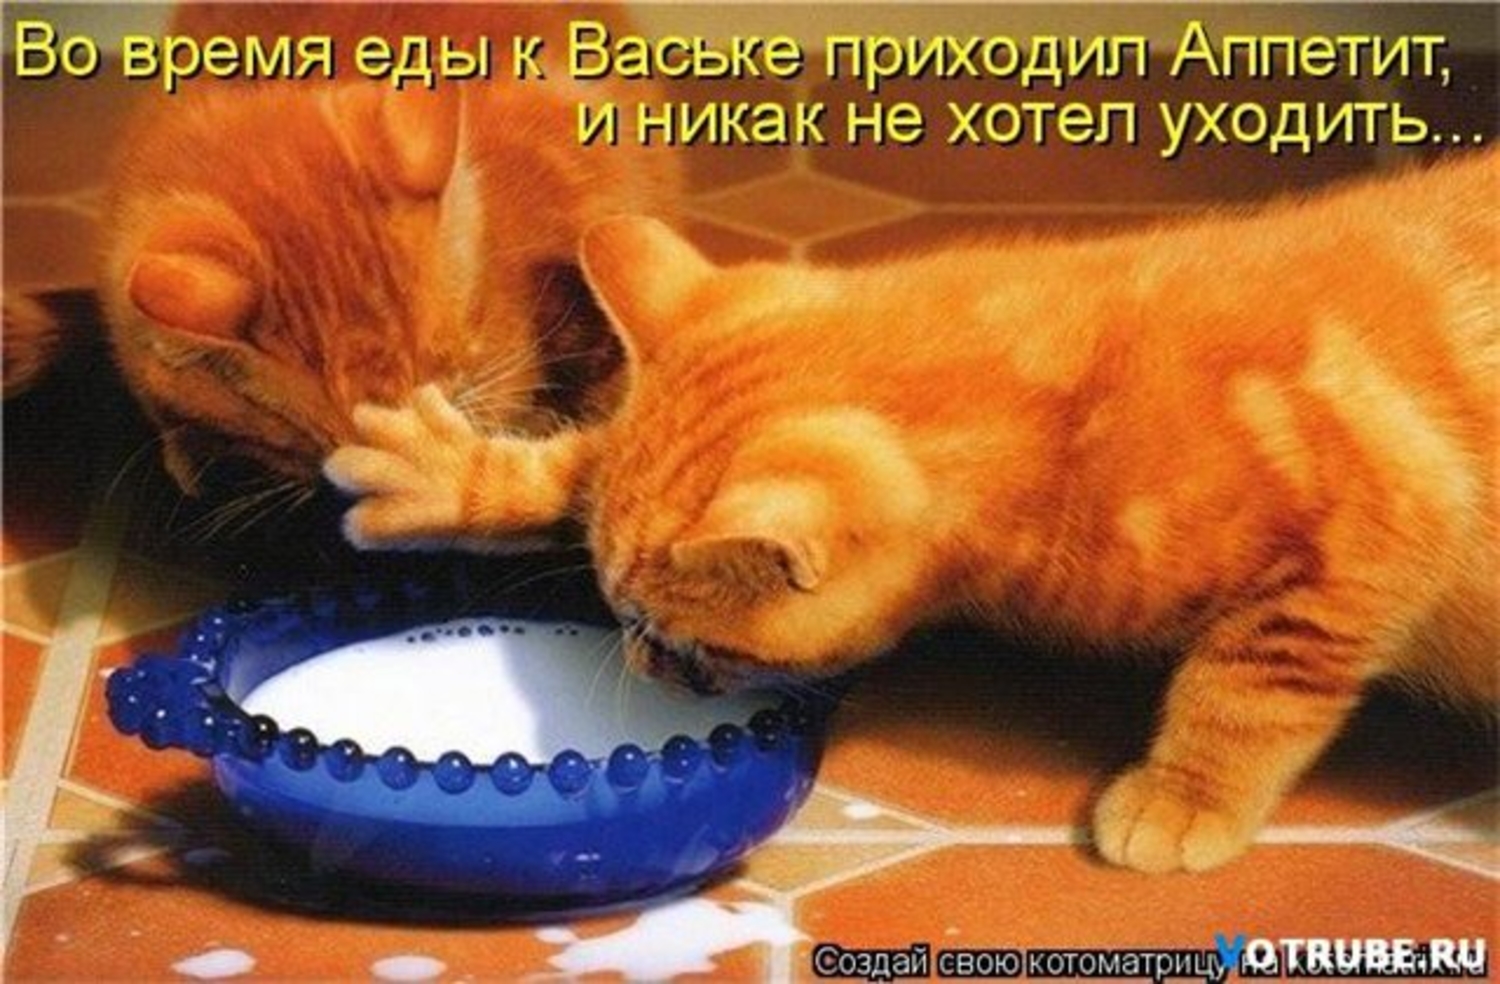 Кушать хочу говорю. Кот хочет есть. Жадные коты. Миска для кота. Рыжий кот кушает.